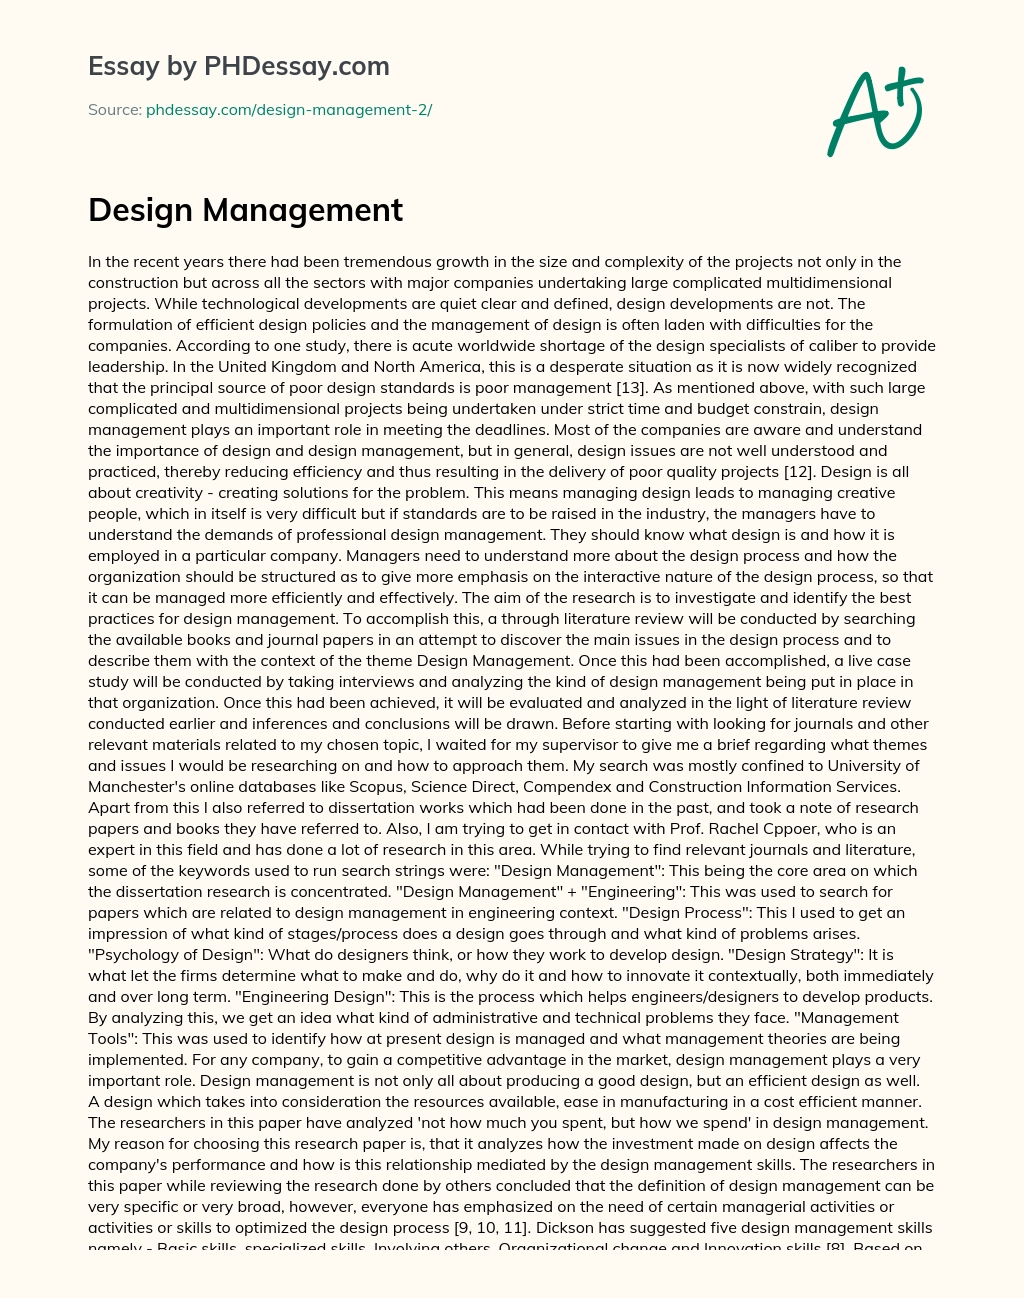 Design Management essay